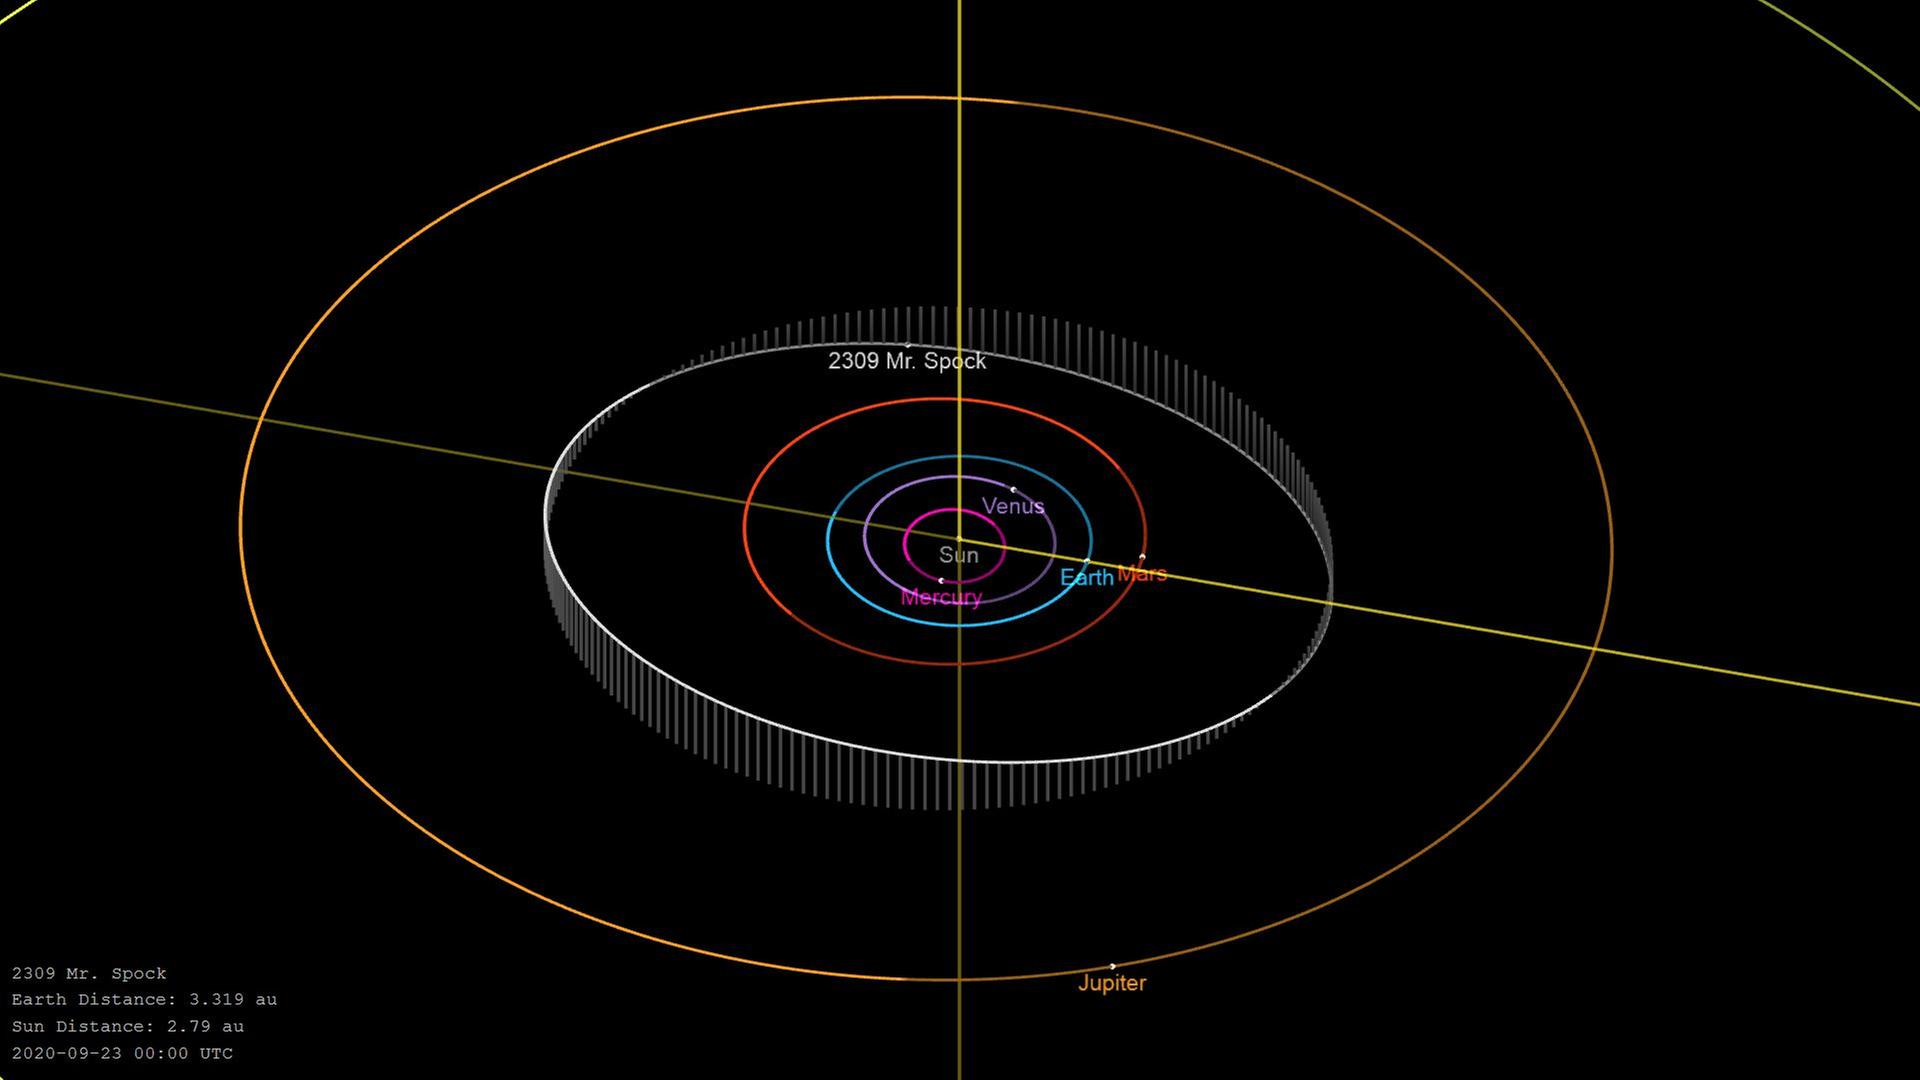 Die Bahn des Asteroiden 2309 Mr. Spock verläuft zwischen Mars- und Jupiterbahn